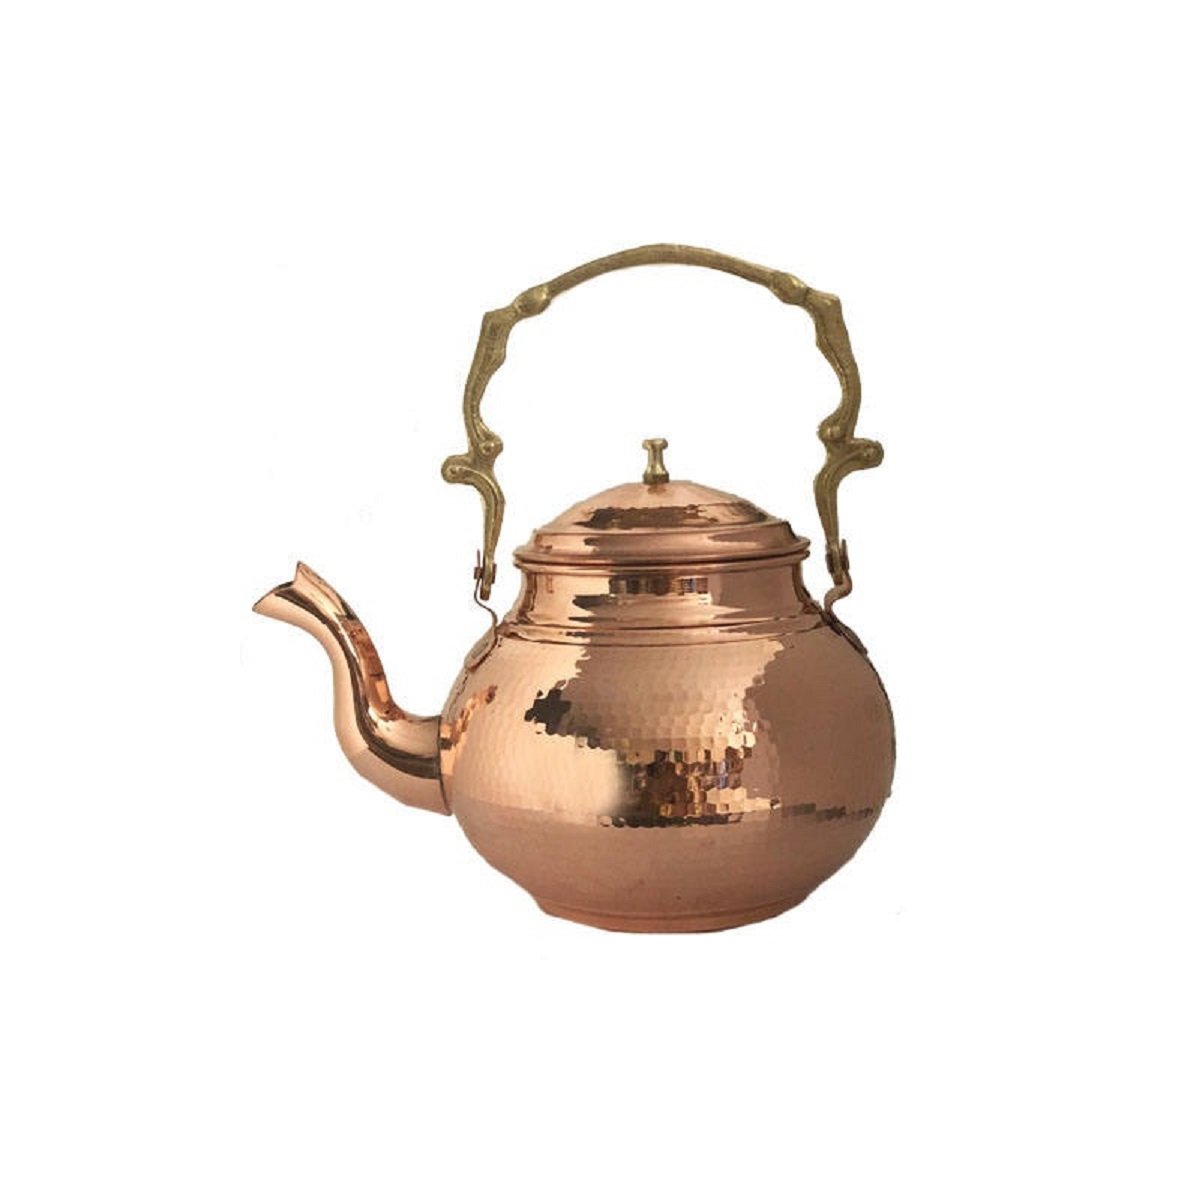 Handicraft Copper Kettle Code 176, pris på kobbervarer, kobbervarer håndlavet, kobbervarer